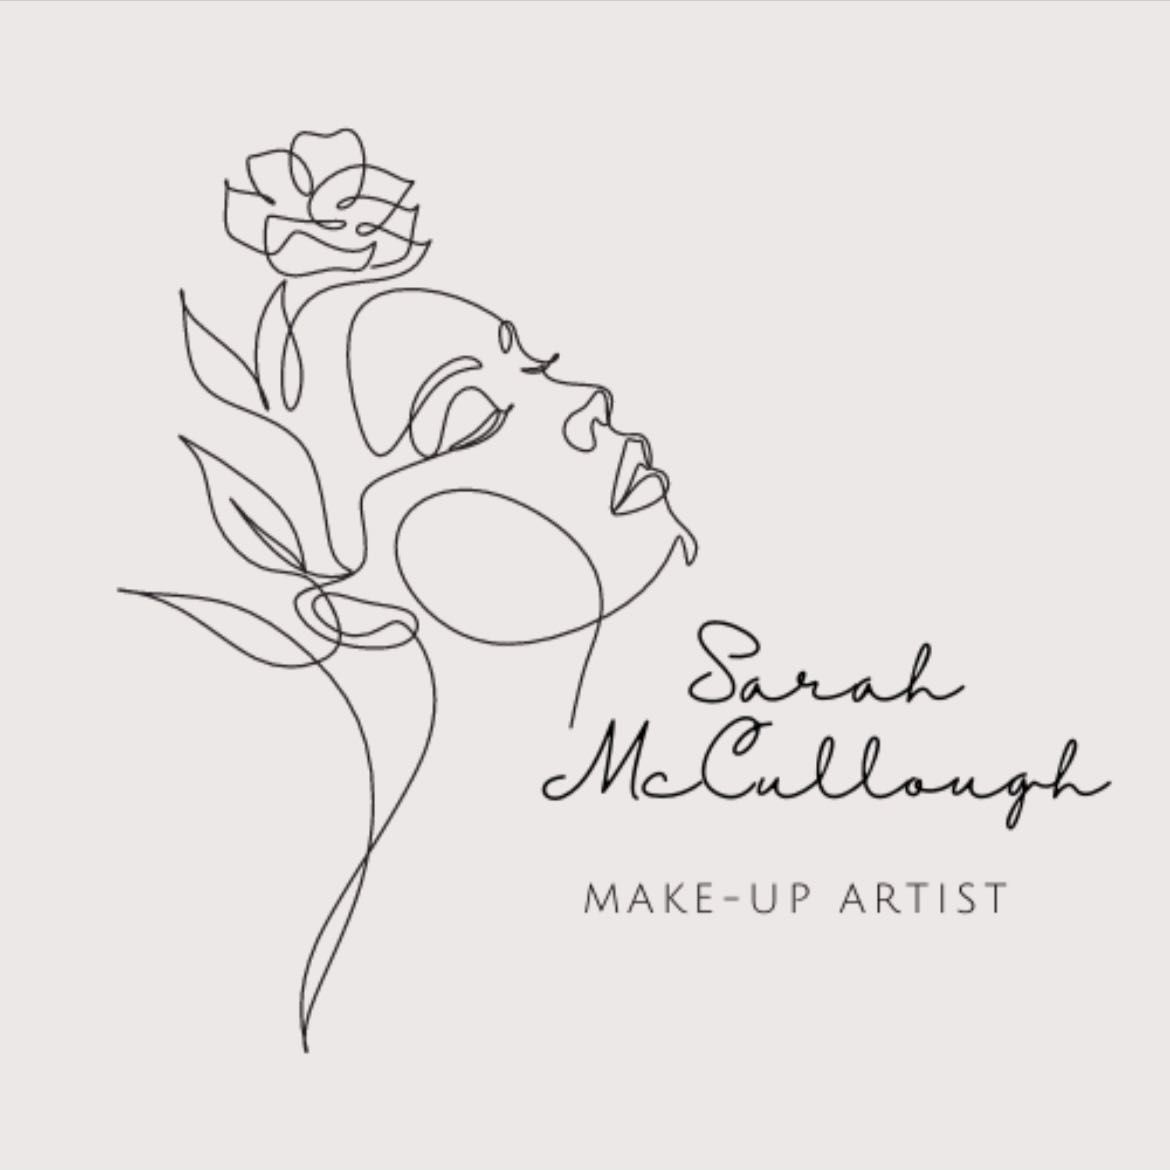 SMC Make-up Artistry, 1e Suffolk Road, BT11 9JS, Belfast